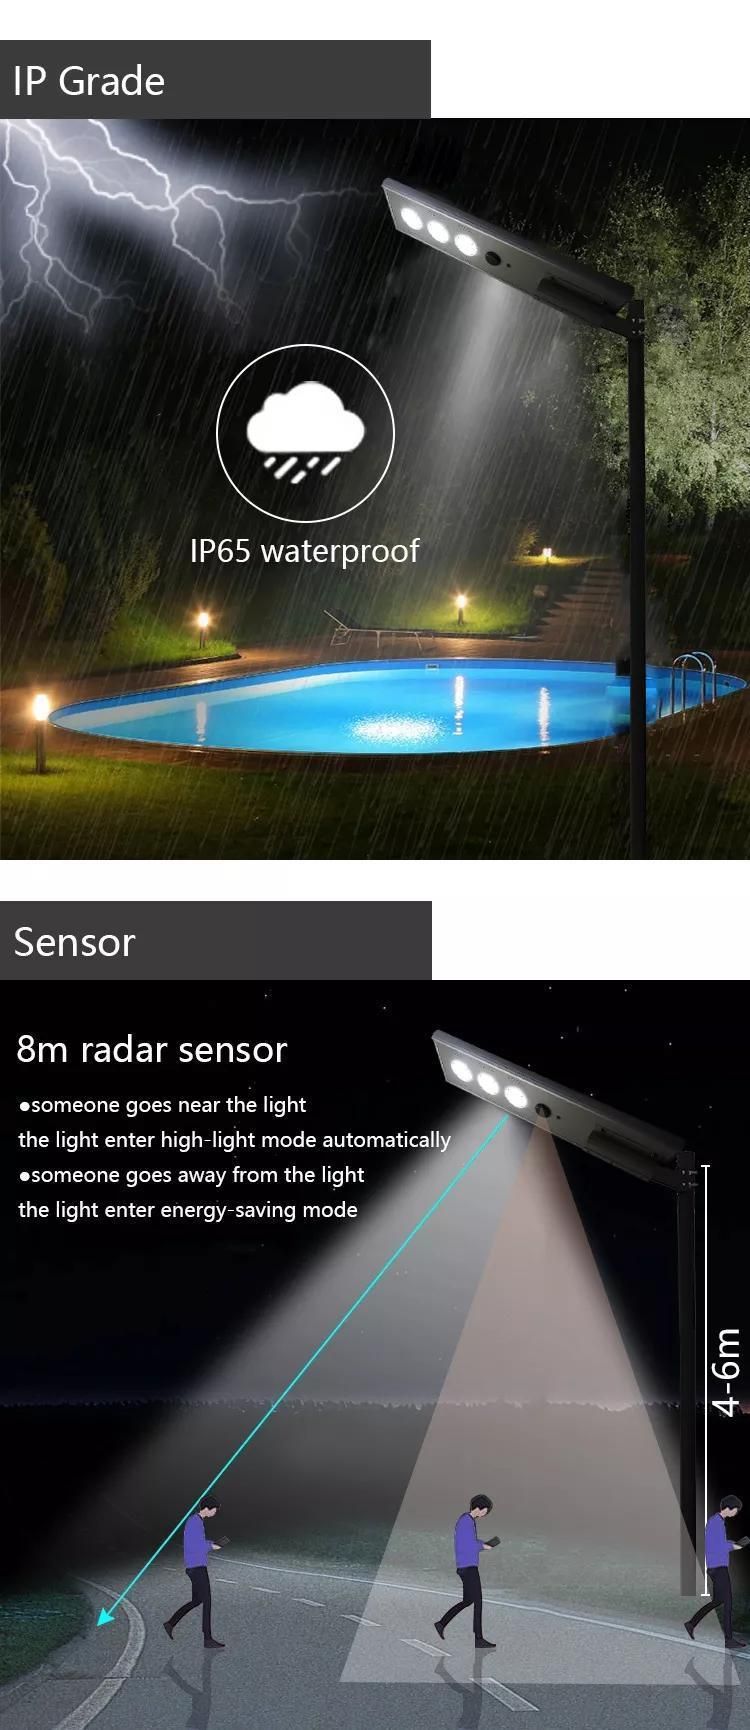 Solar Street Light 2835 SMD Light Intelligent Decoration Outdoor Solar Lights with Sensor